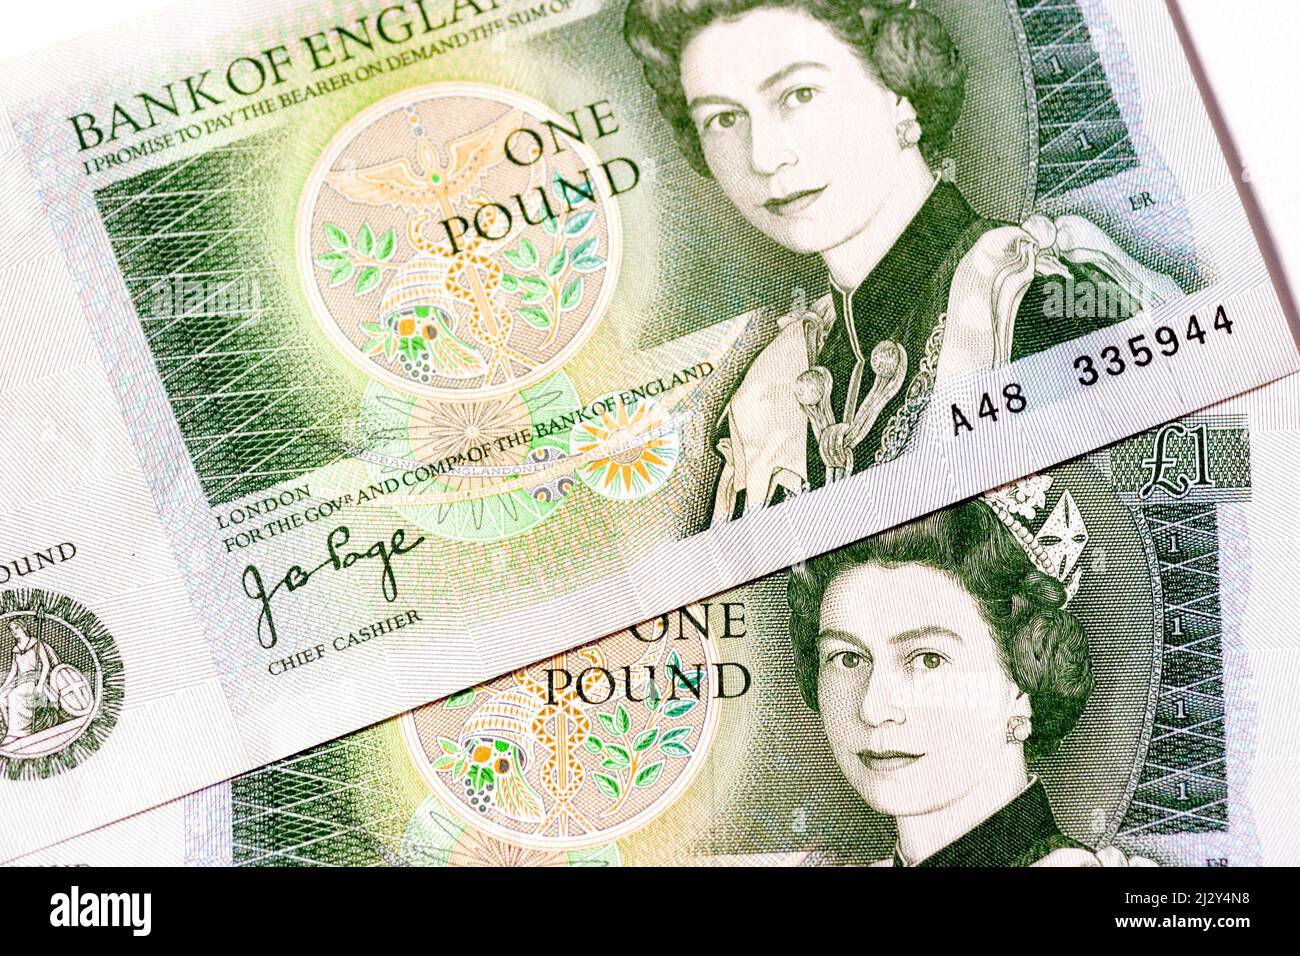 Alte £1 (1 Pfund) Note. Detailansicht der alten britischen £1-Note. Die Note wurde 1988 zurückgezogen, da sie nicht mehr als gesetzliches Zahlungsmittel gilt oder in Umlauf ist. Stockfoto